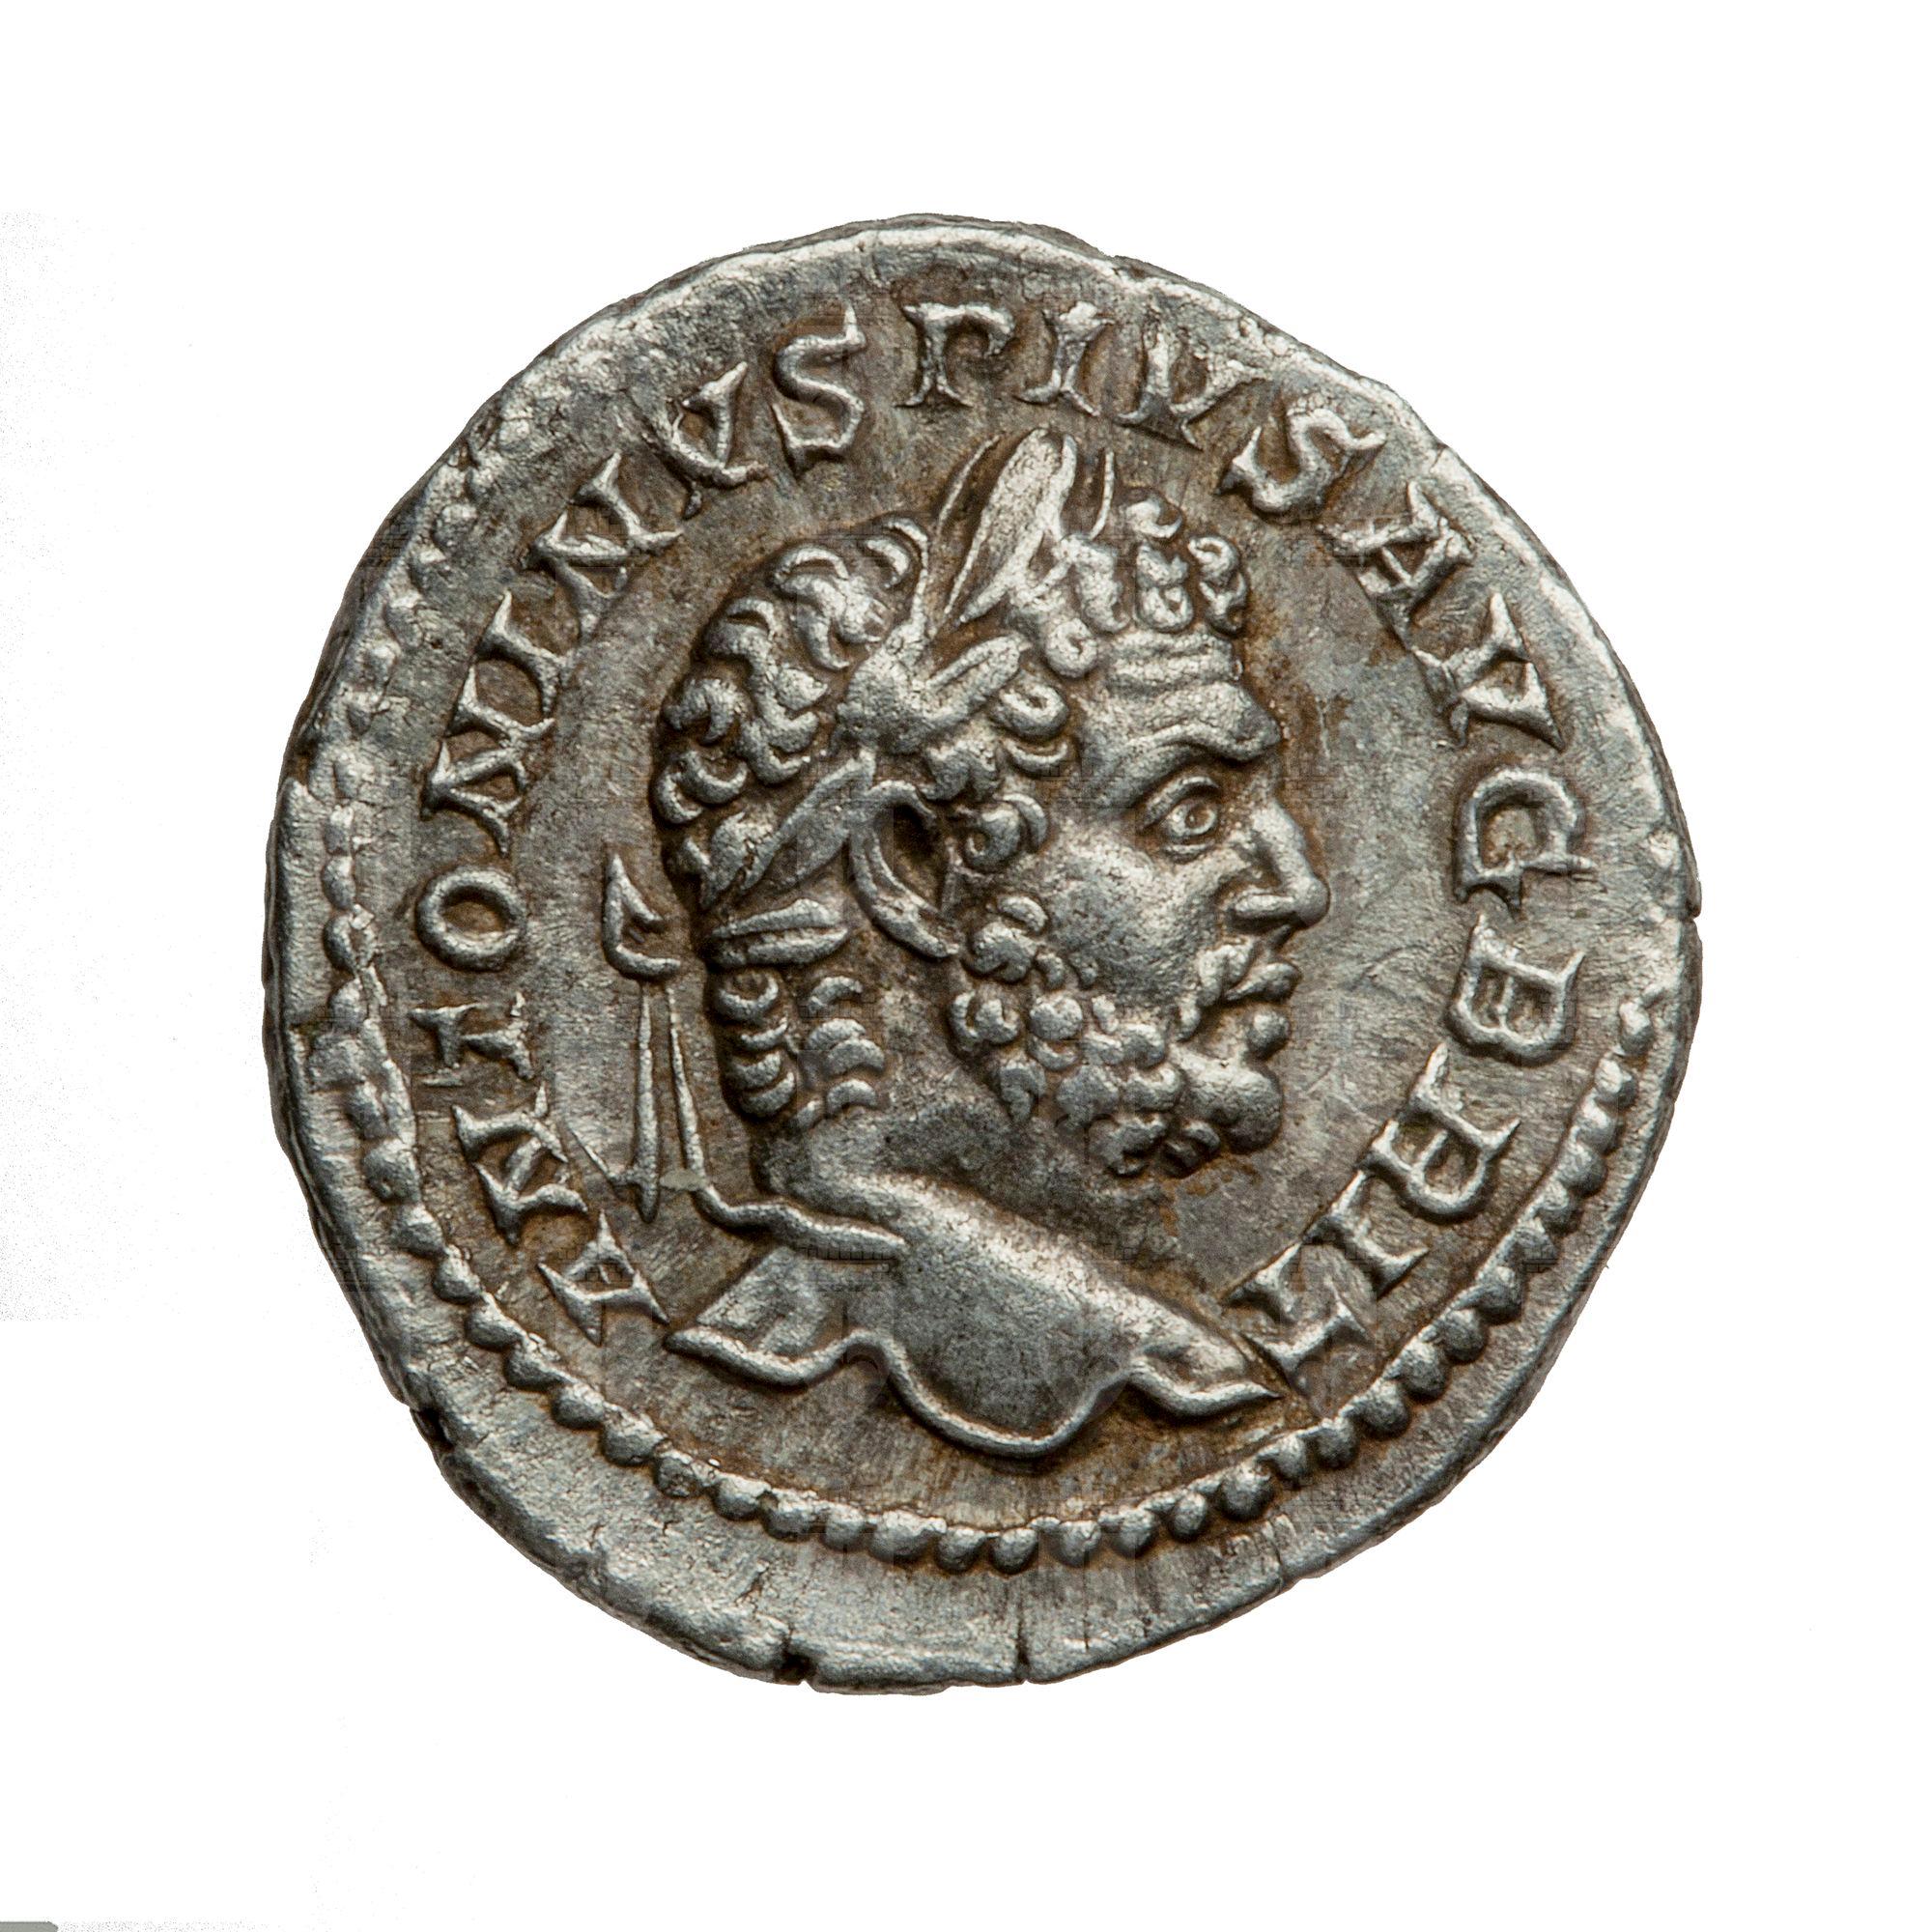 https://catalogomusei.comune.trieste.it/samira/resource/image/reperti-archeologici/Roma 1243 D Caracalla.jpg?token=65e6b944bbc32